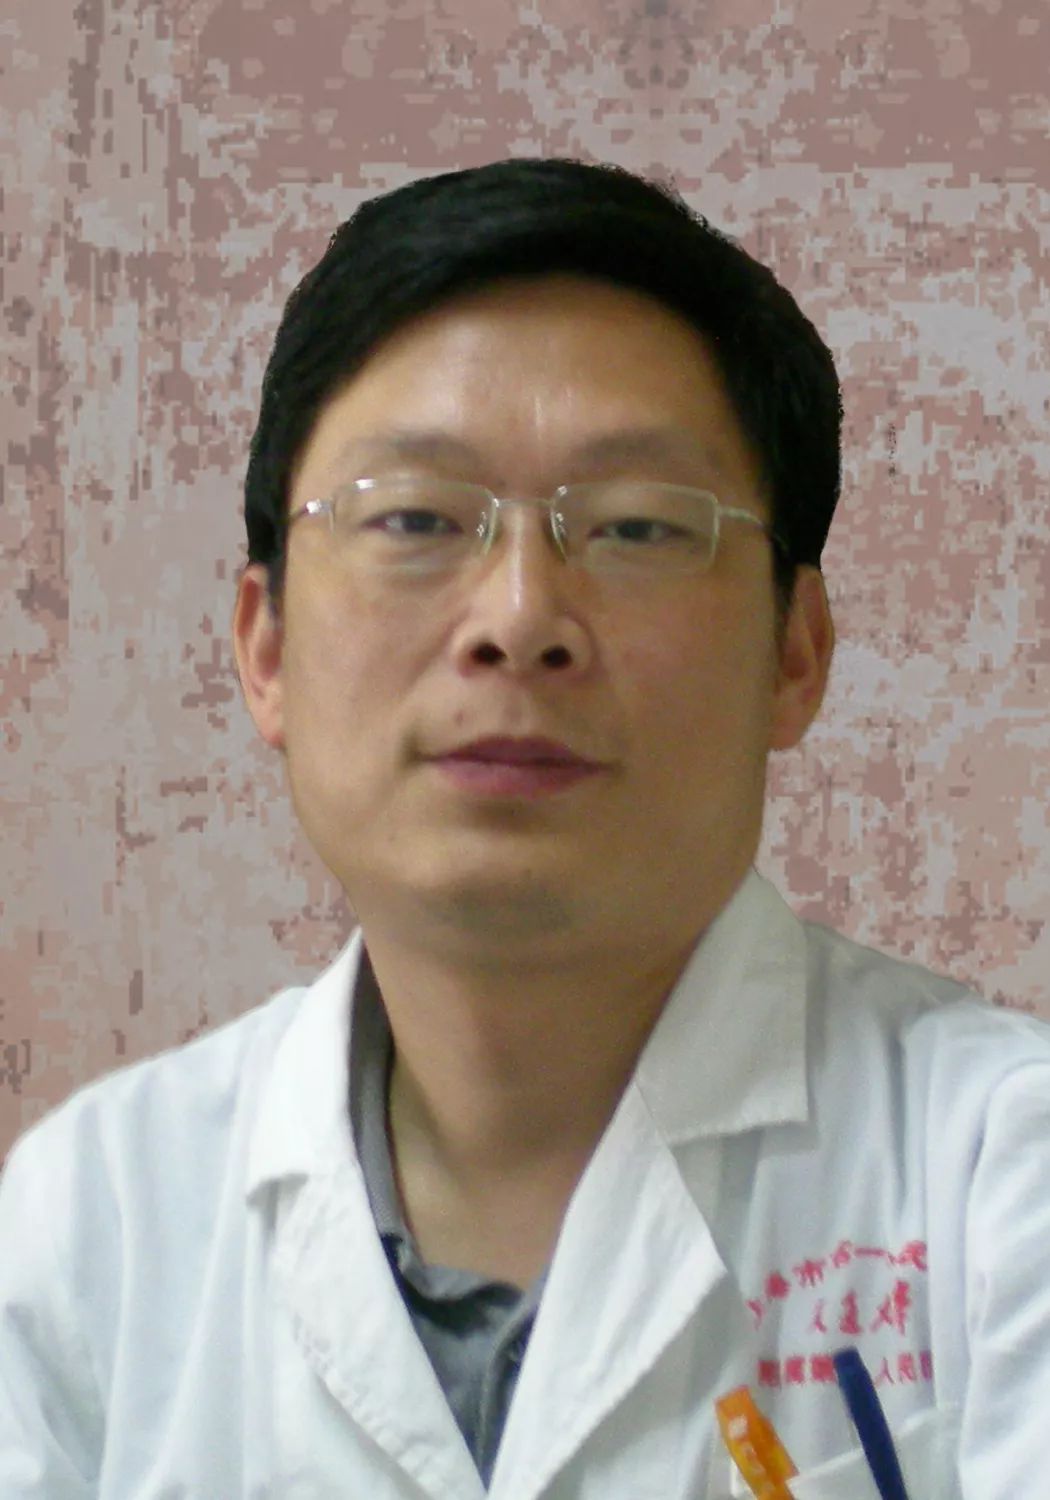 施伟民上海医学会皮肤性病协会主任委员上海市第一人民医院皮肤科主任